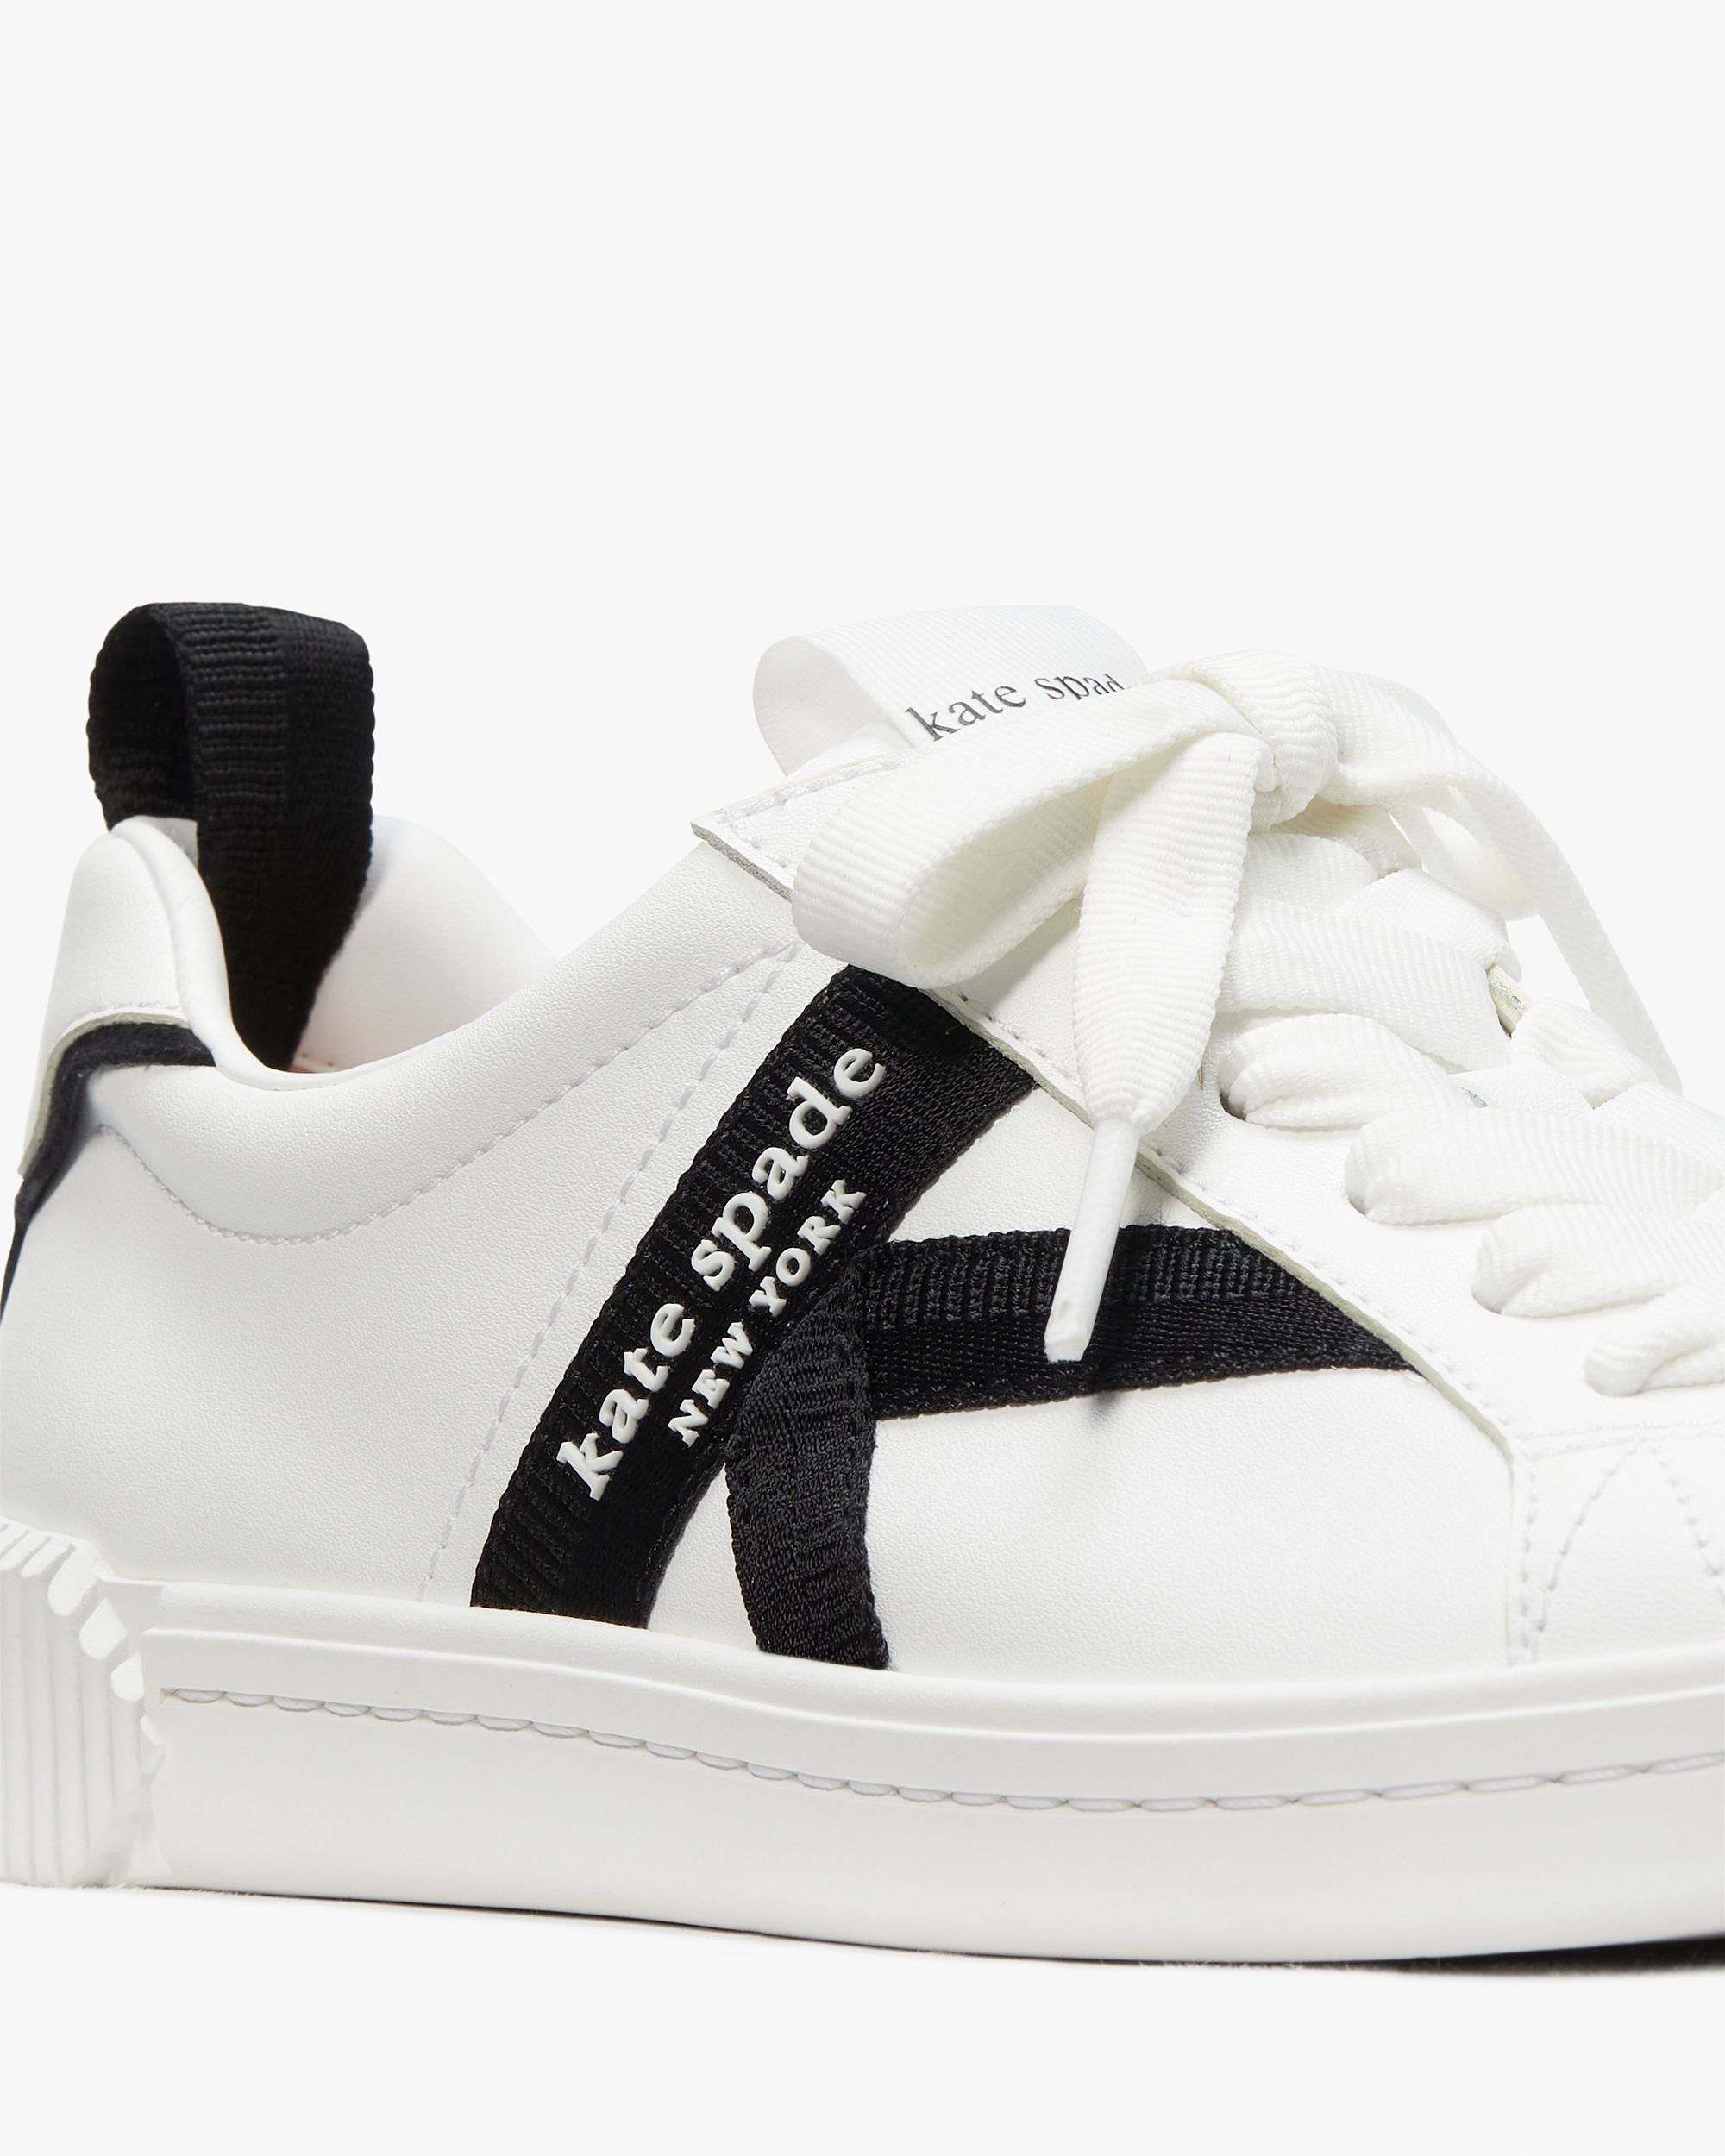 kg693_Signature Sneakers_True White / Black